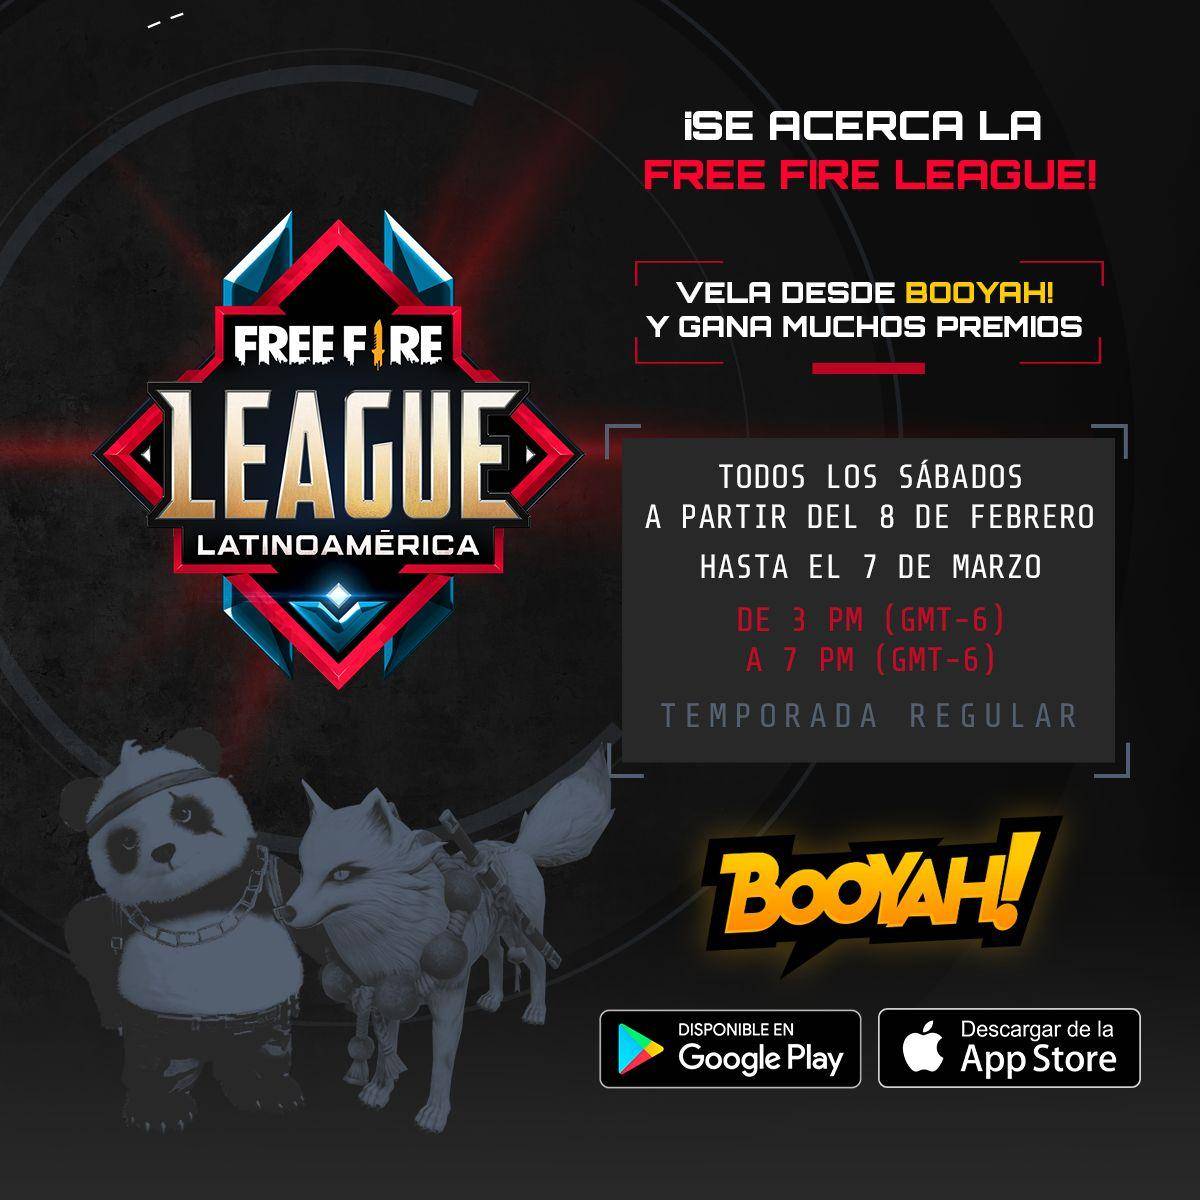 Conoce BOOYAH!, la plataforma oficial de streaming para la Free Fire League 2020 1